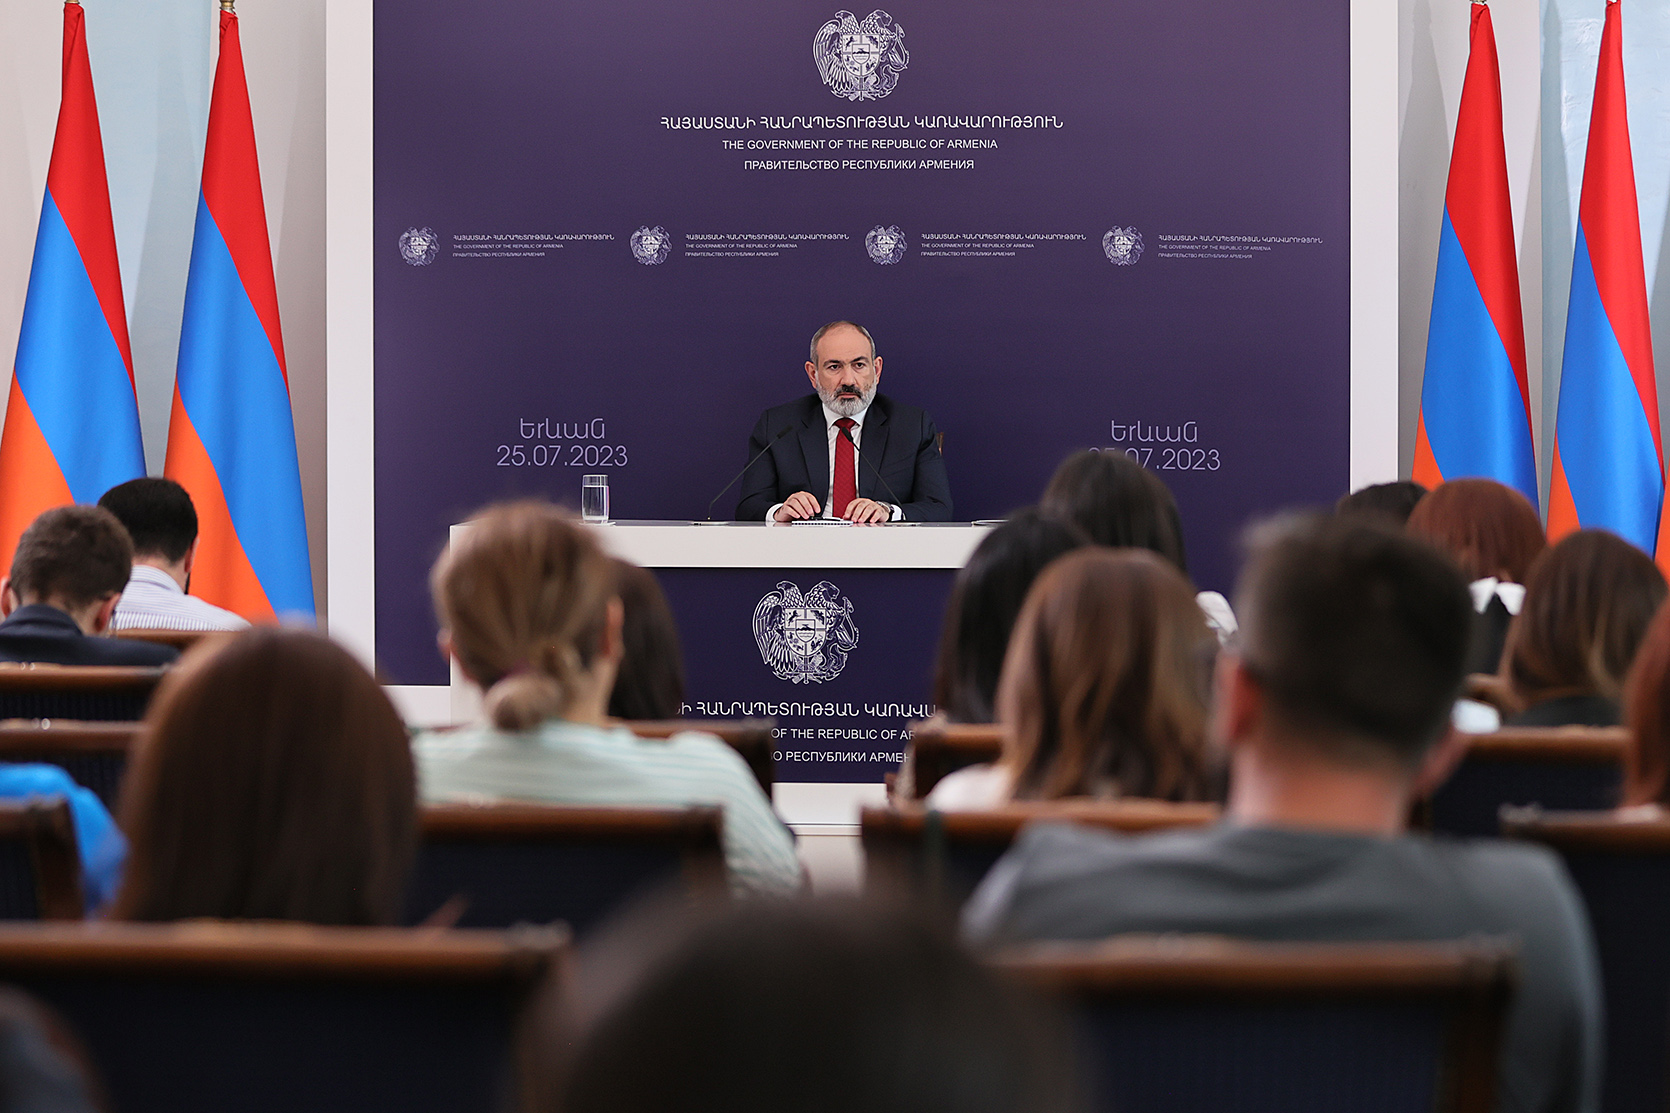 Жизненно важными становятся разработка, развитие и реализация региональной неконфронтационной политики, и уточнение места и роли Республики Армения в архитектуре будущего региона: Пашинян